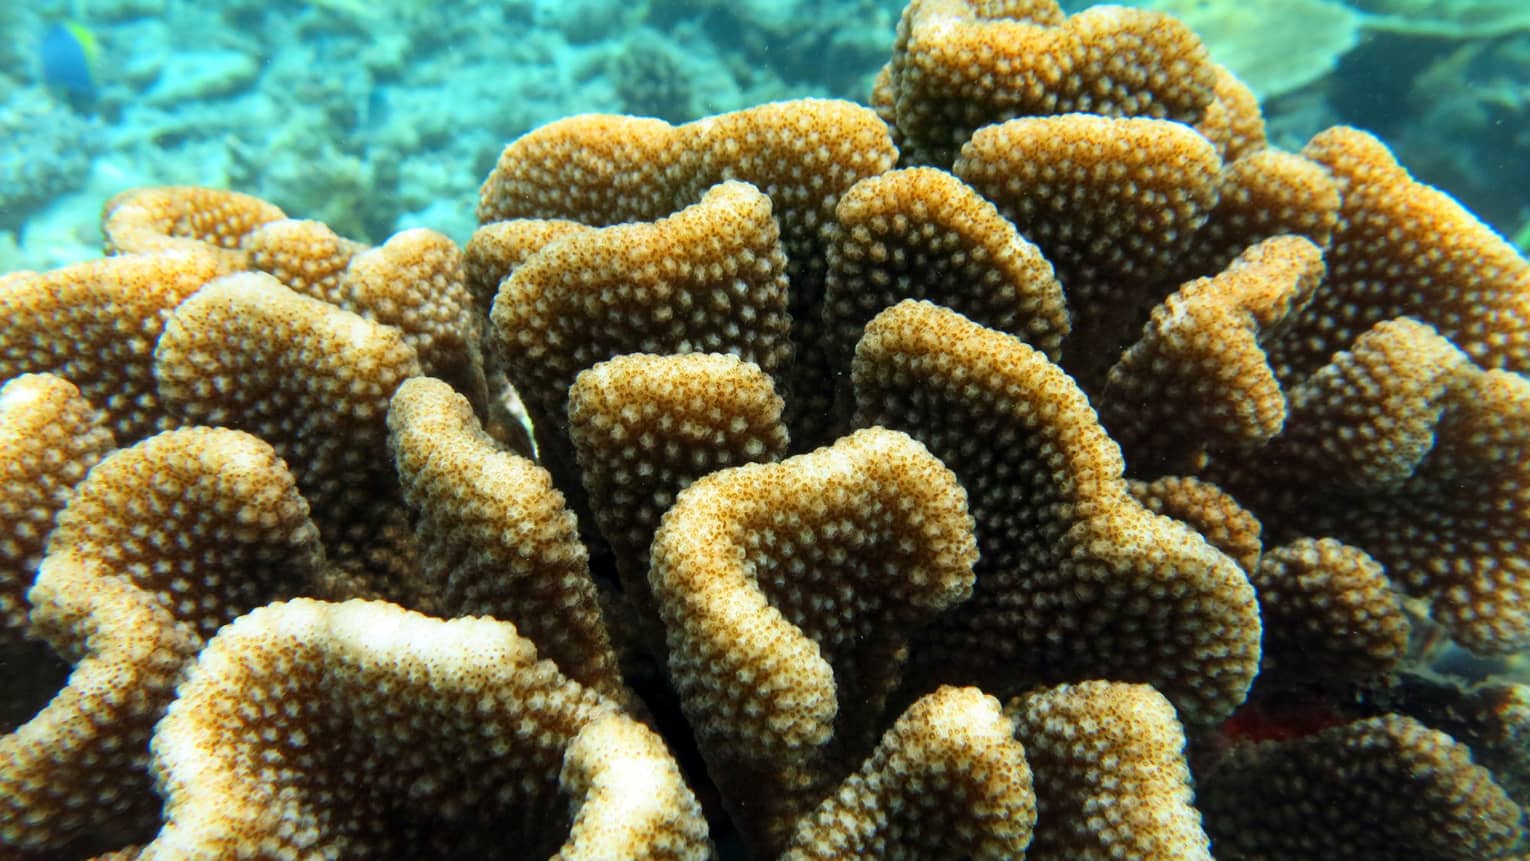 Corals underwater.